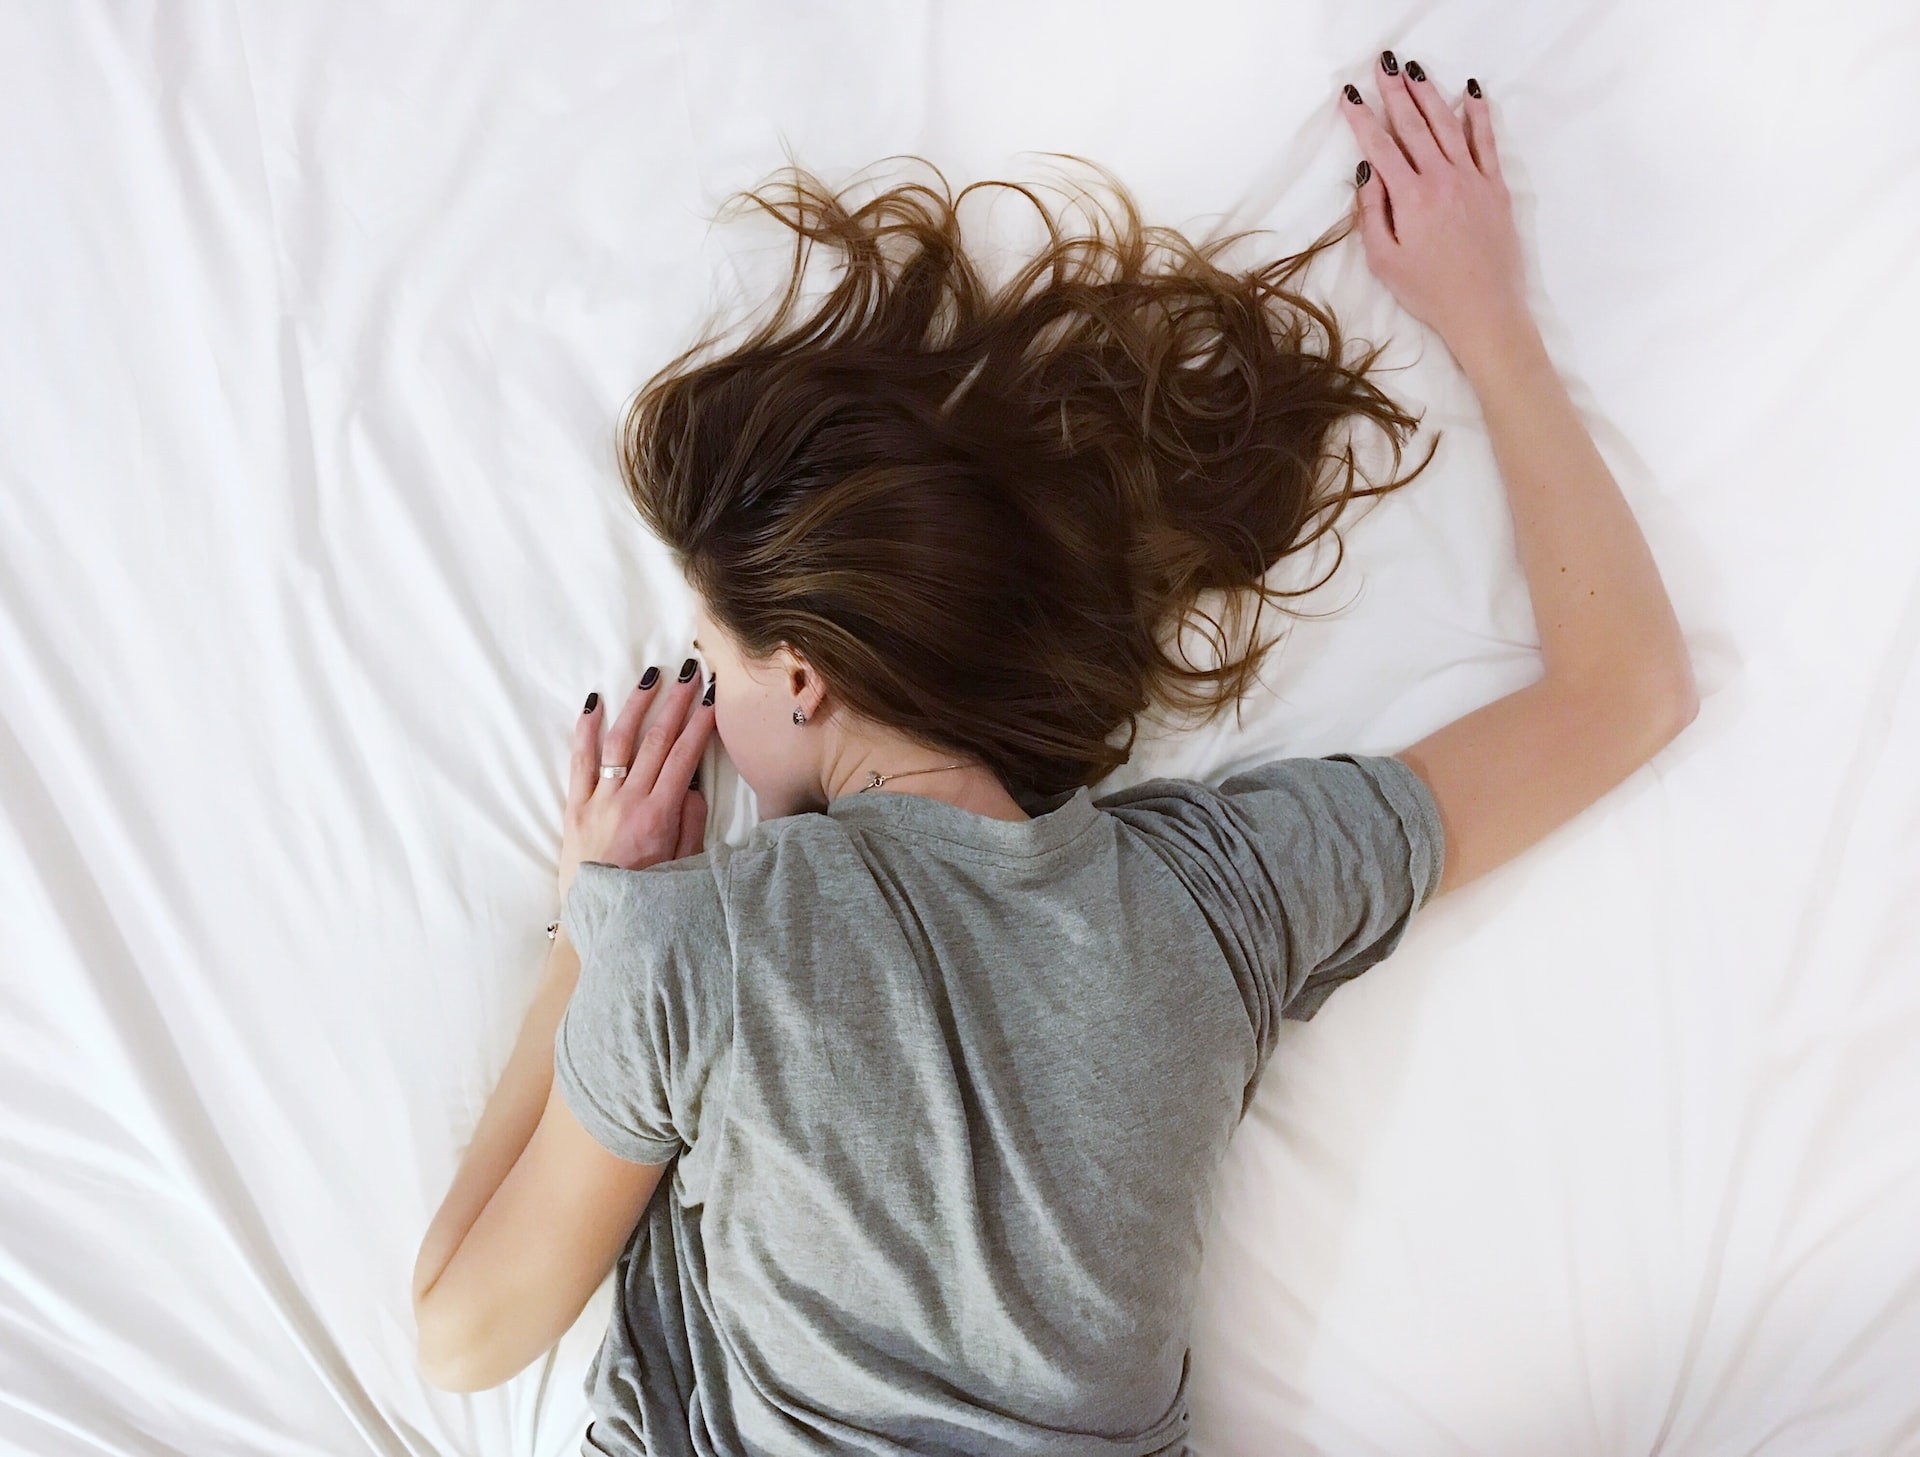 Spanie z mokrymi włosami – czy jest zdrowe? Poznaj opinię ekspertów!